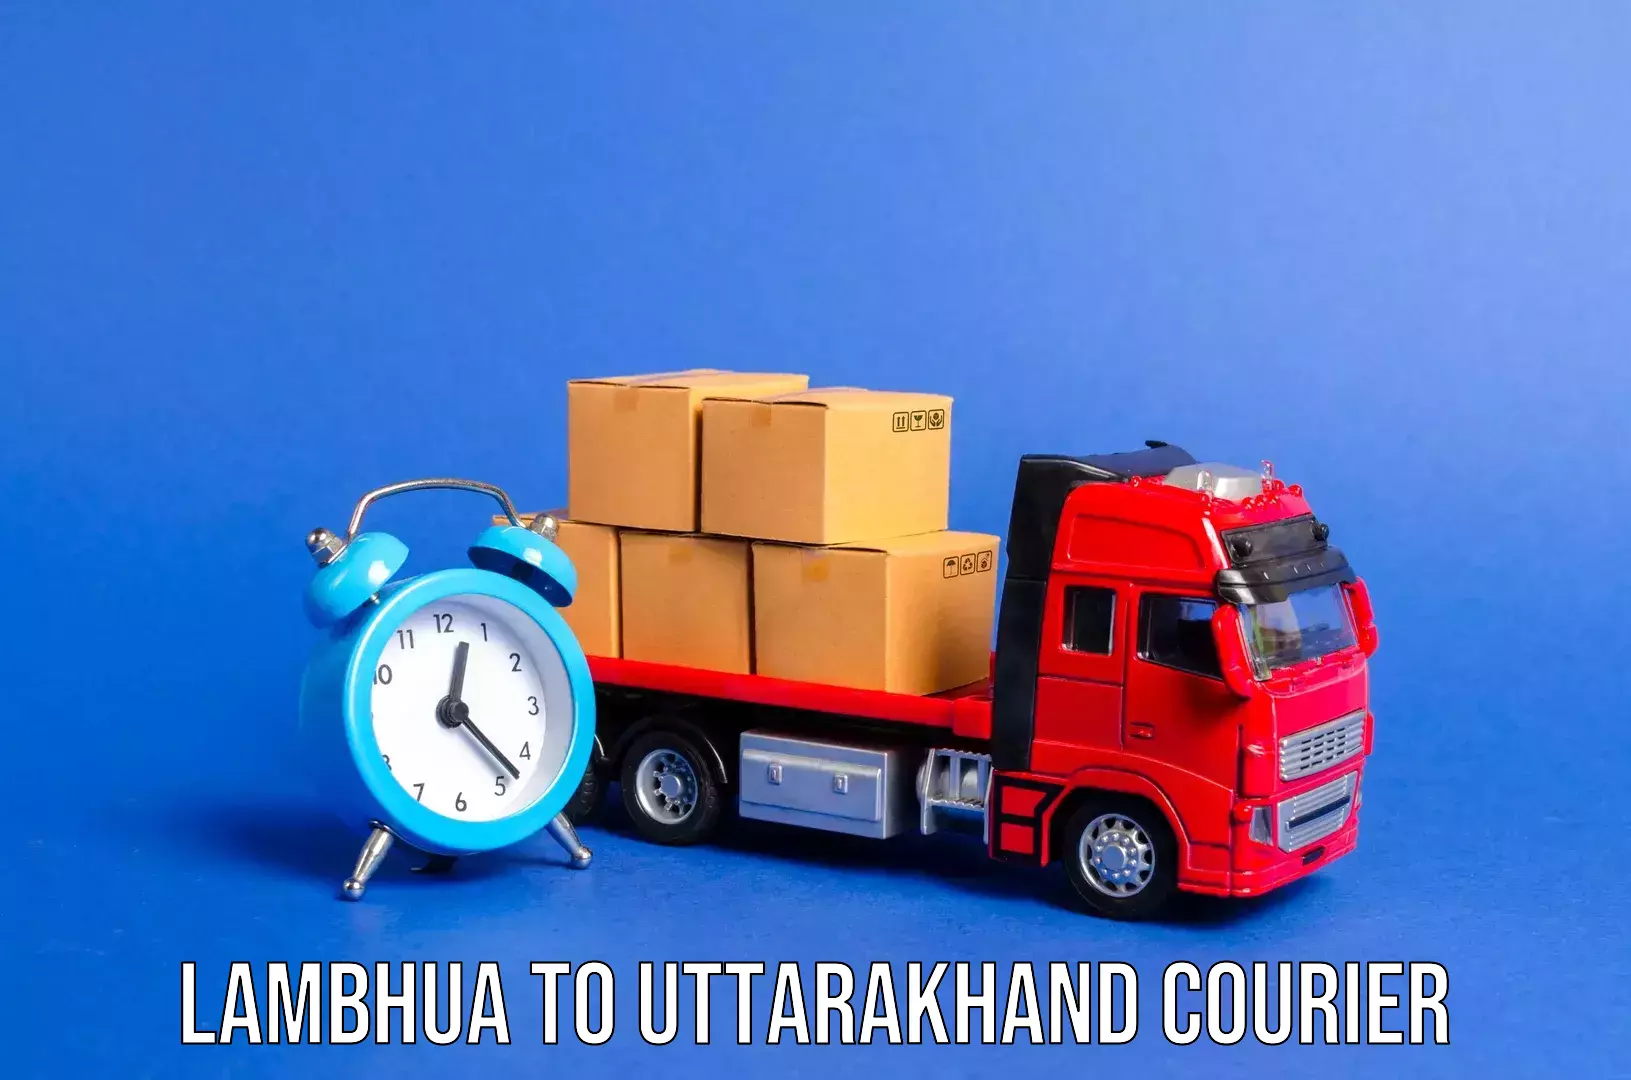 Festival baggage courier Lambhua to Uttarakhand